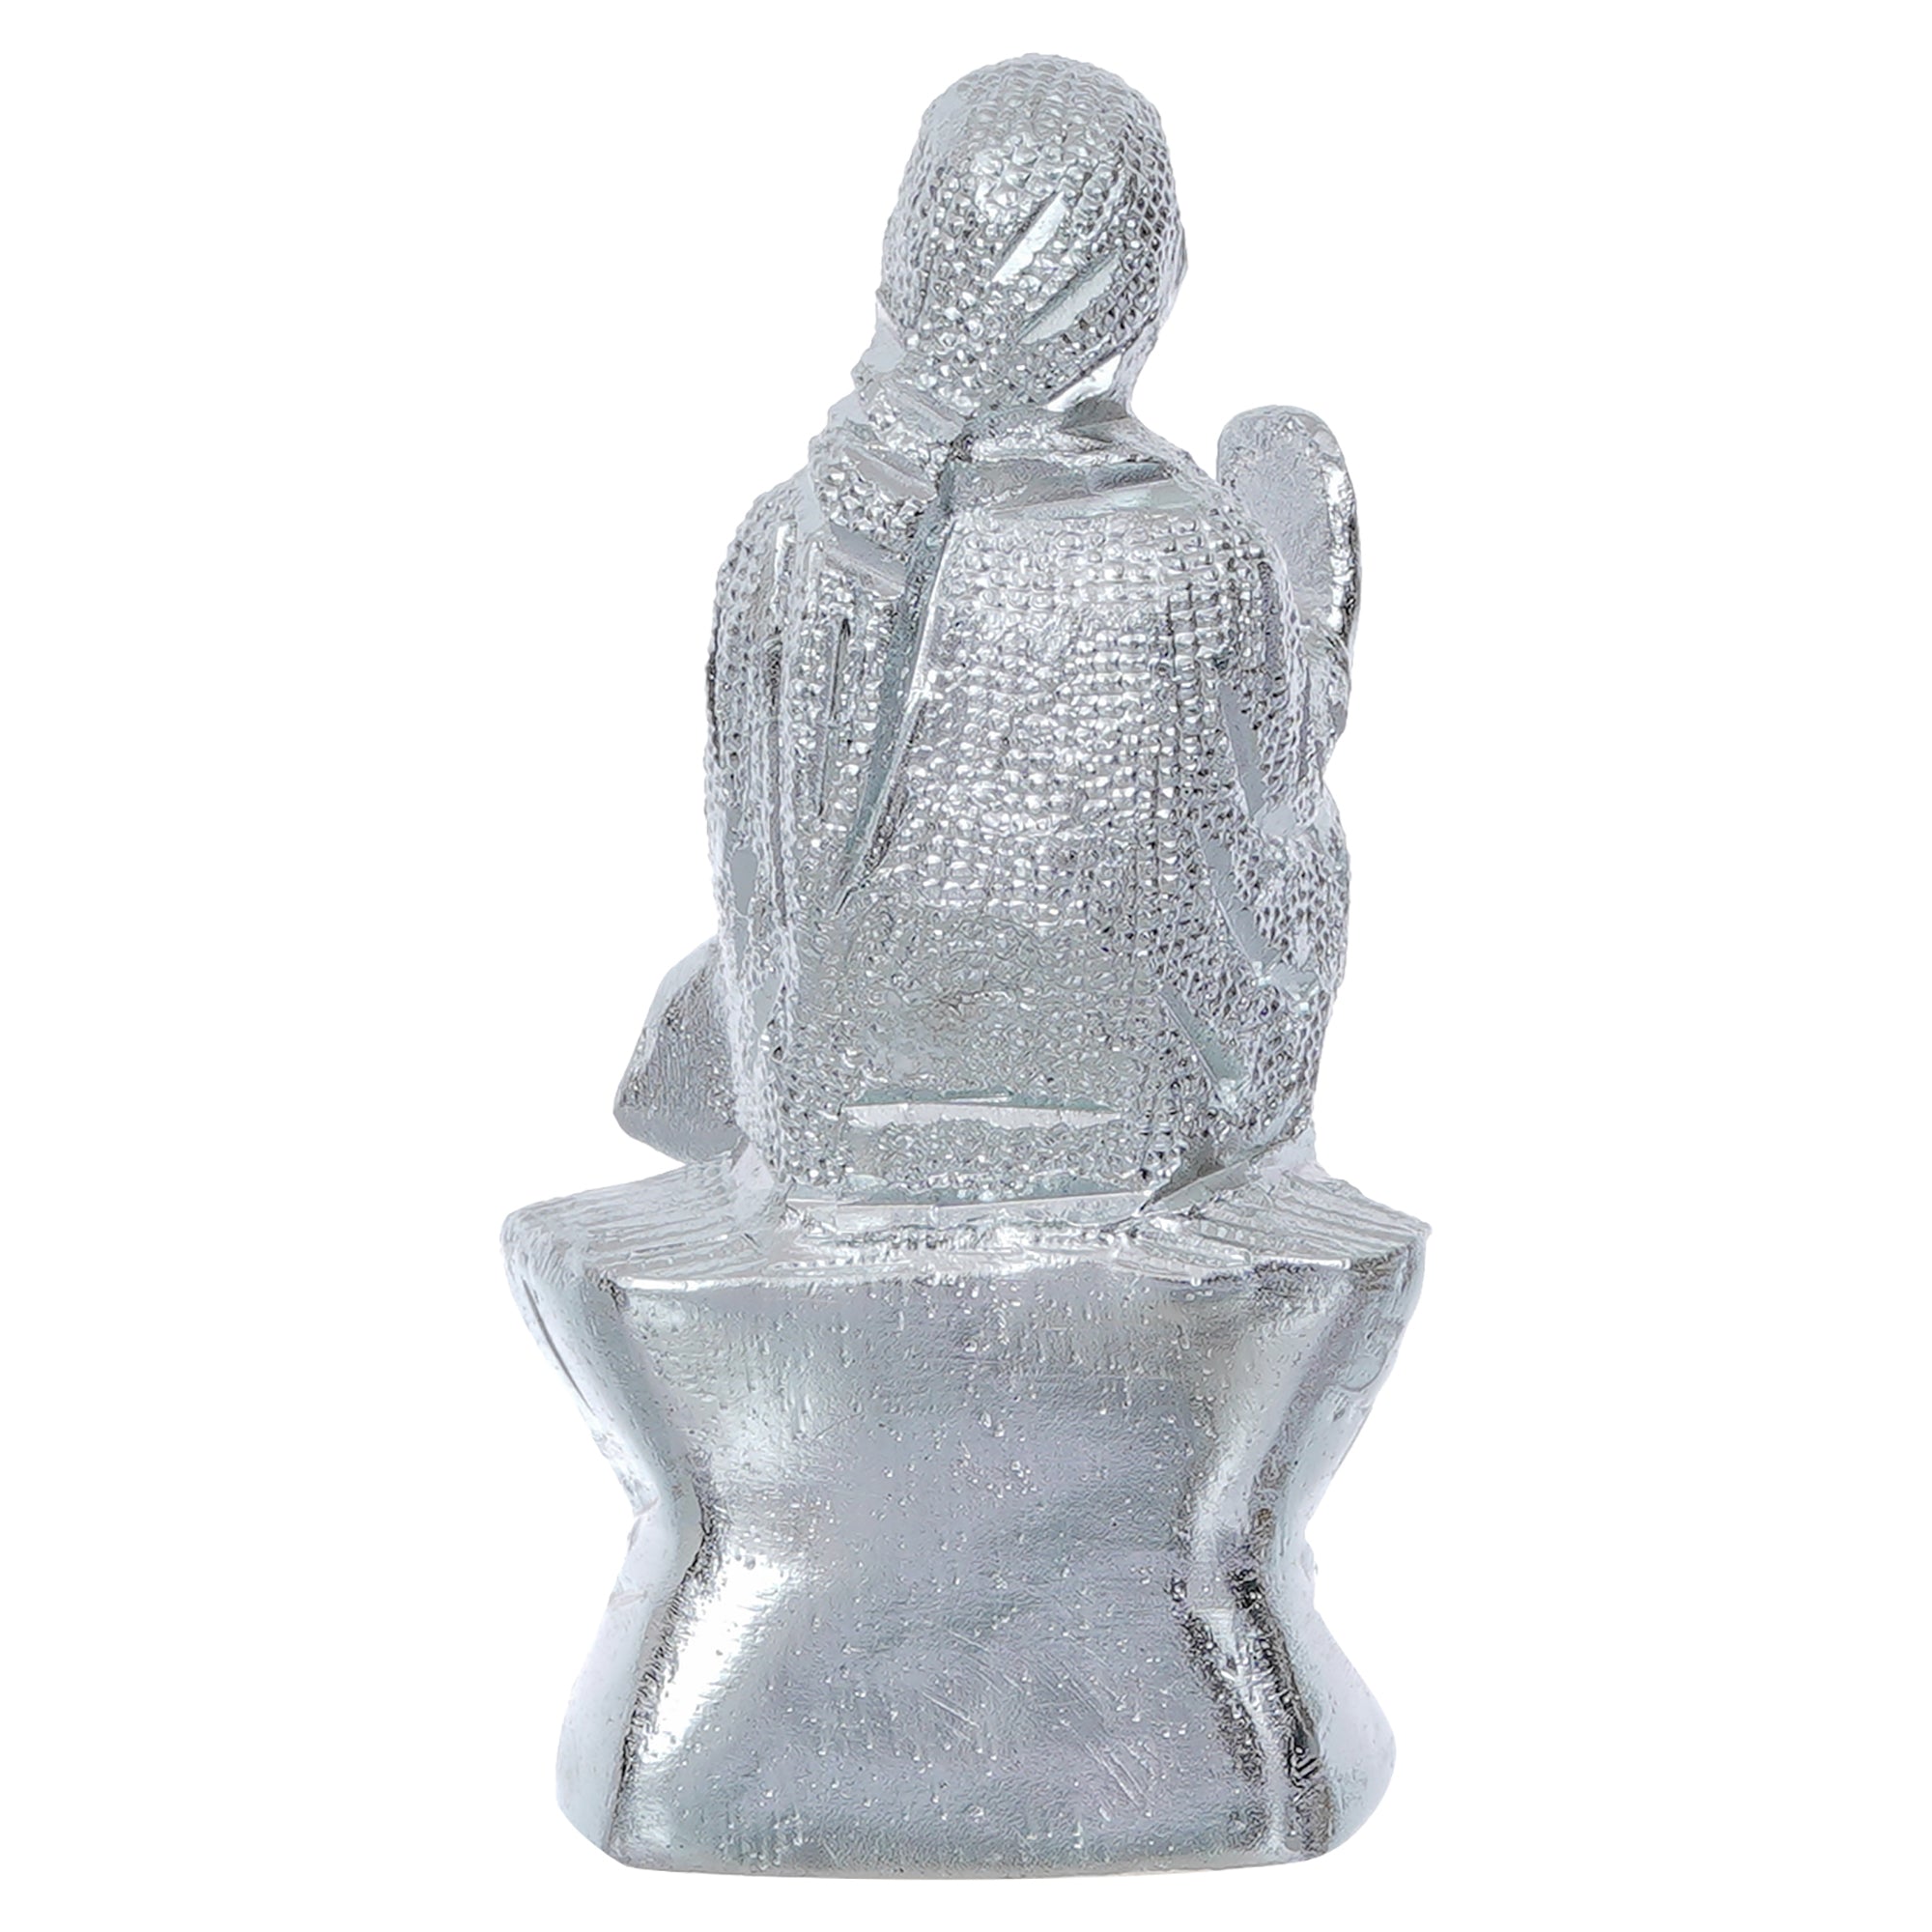 Silver Sai Baba Metal Figurine 5